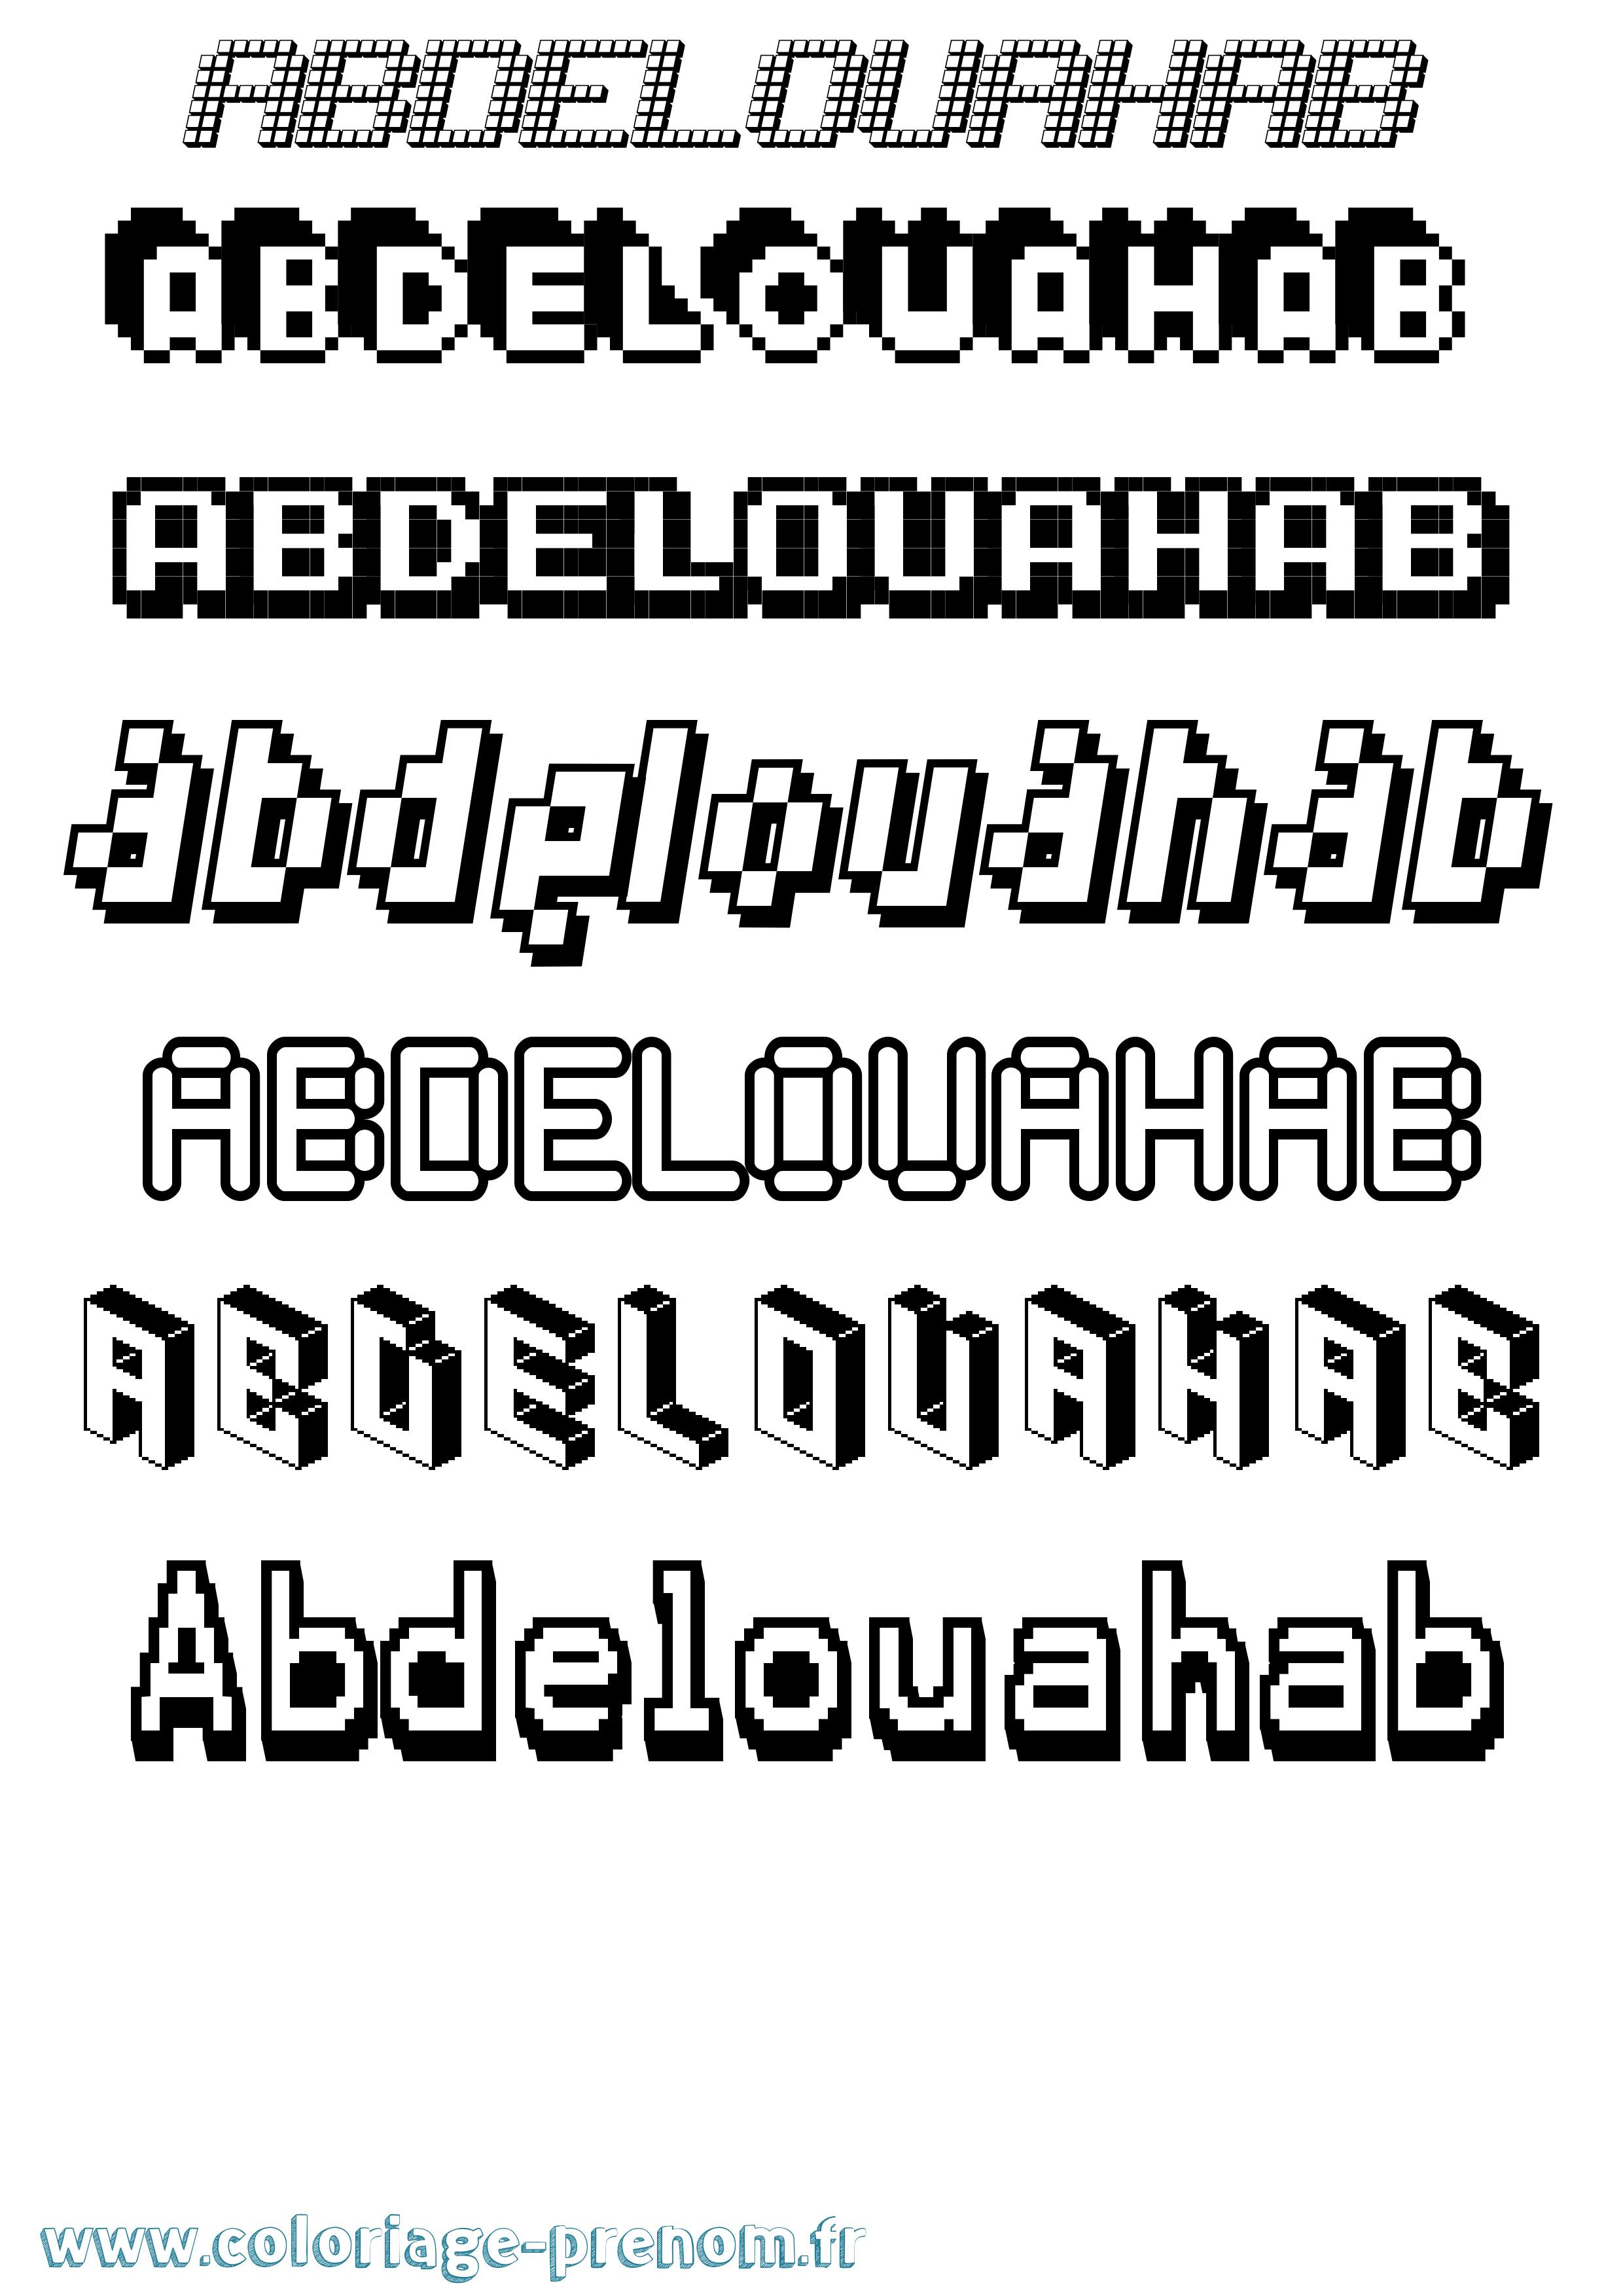 Coloriage prénom Abdelouahab Pixel